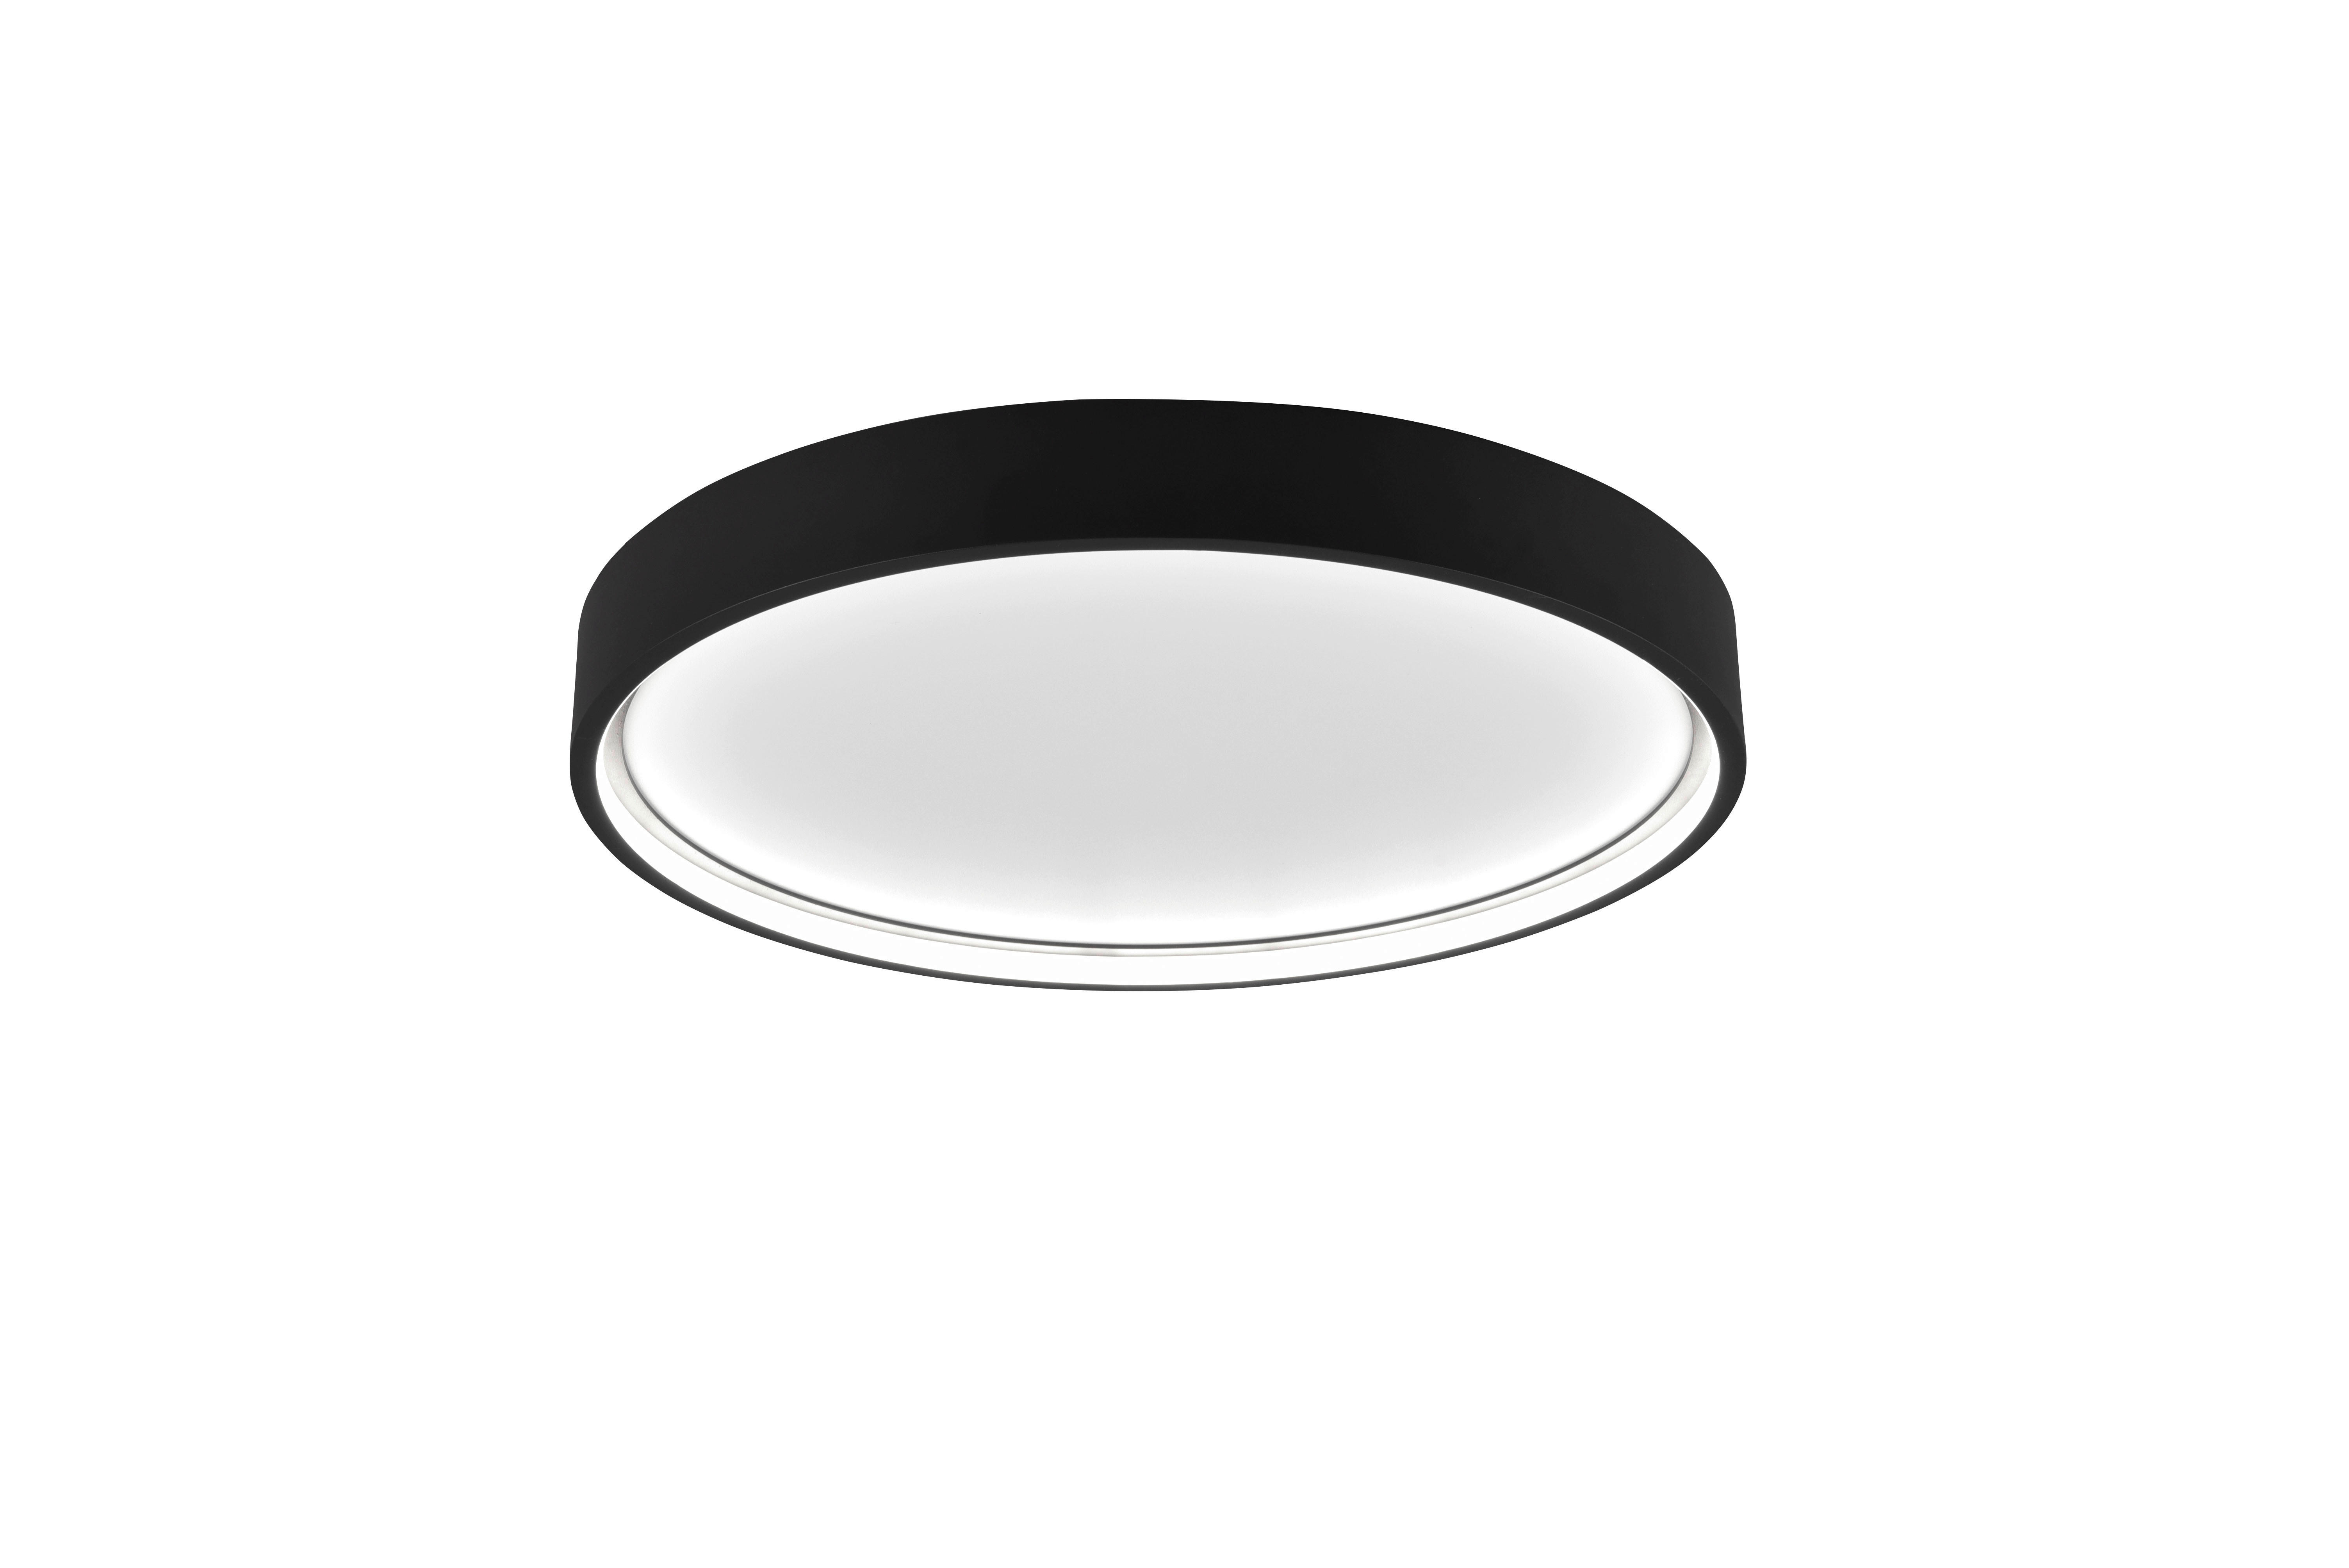 LED-DECKENLEUCHTE Doha 45/5,5 cm   - Schwarz, Basics, Metall (45/5,5cm) - Trio Leuchten